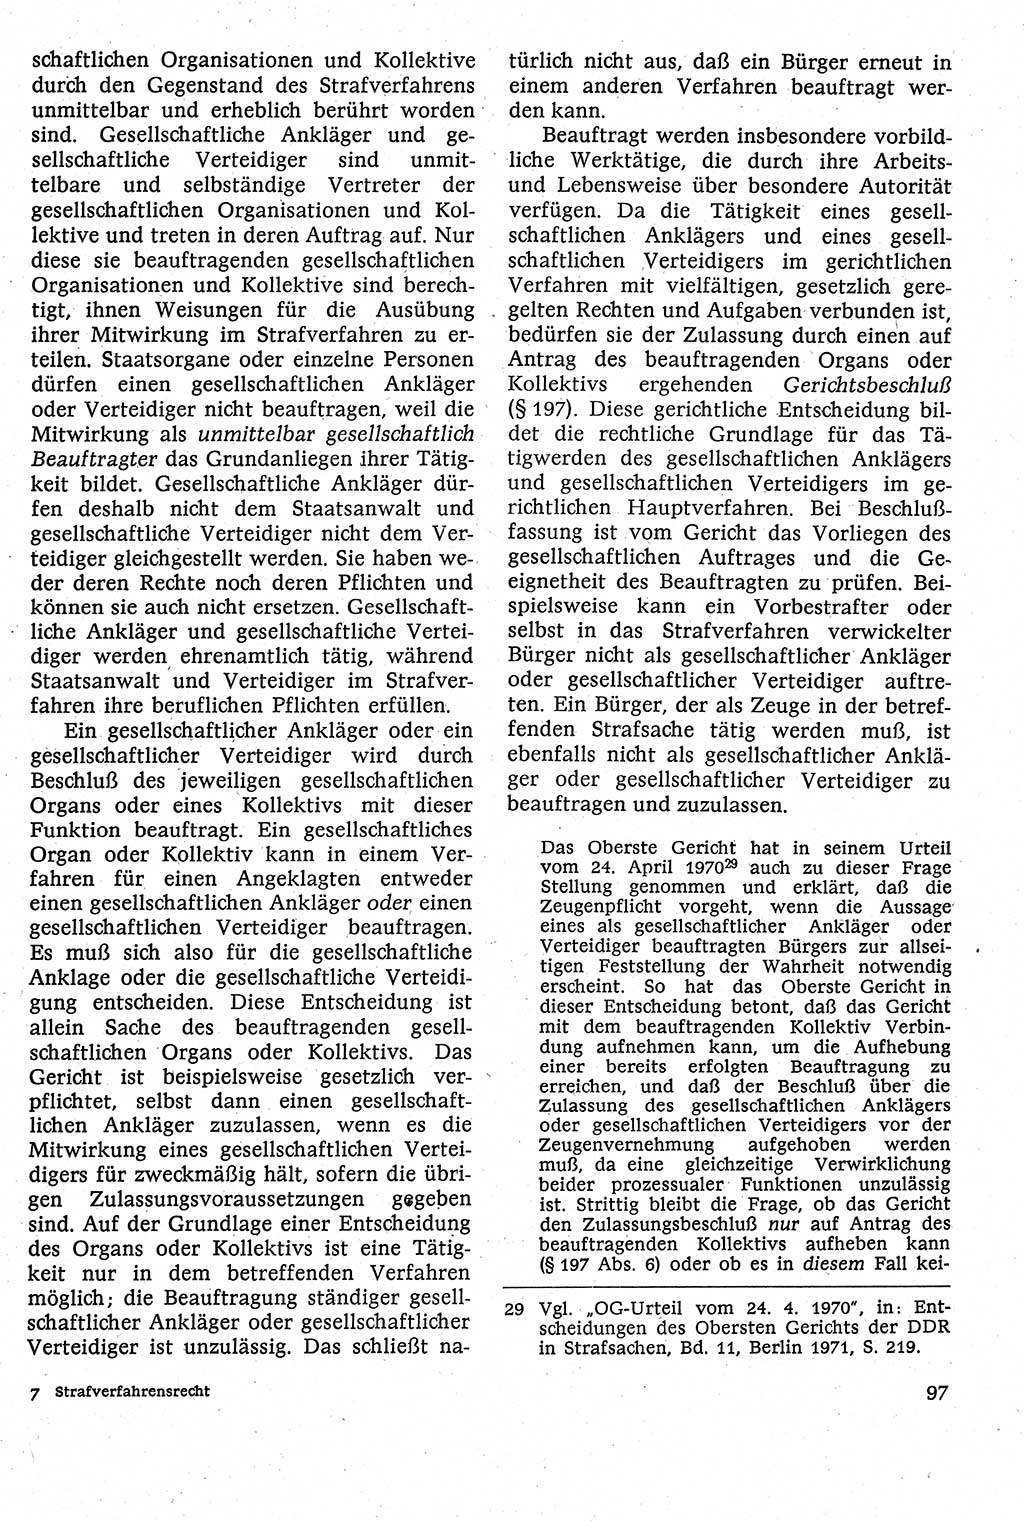 Strafverfahrensrecht [Deutsche Demokratische Republik (DDR)], Lehrbuch 1982, Seite 97 (Strafverf.-R. DDR Lb. 1982, S. 97)